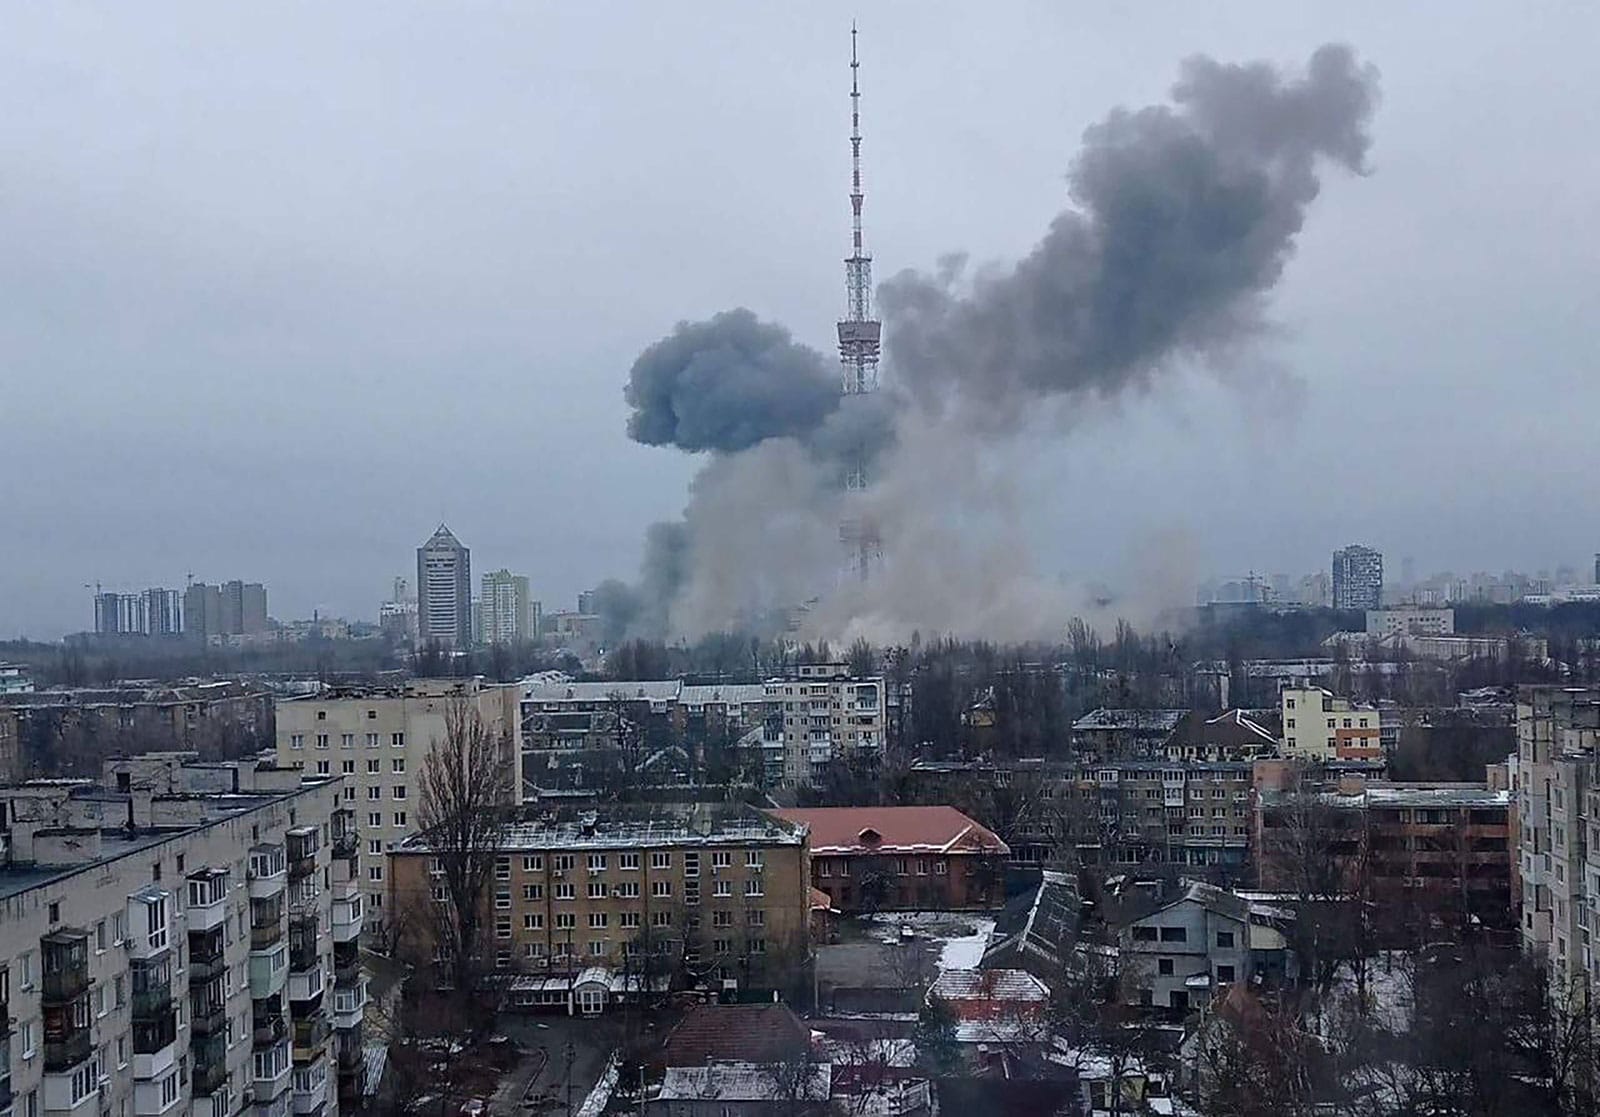 रुसी आक्रमणका कारण केही मिनेटमै २ हजारभन्दा बढी नागरिक मारिएको युक्रेनको दाबी